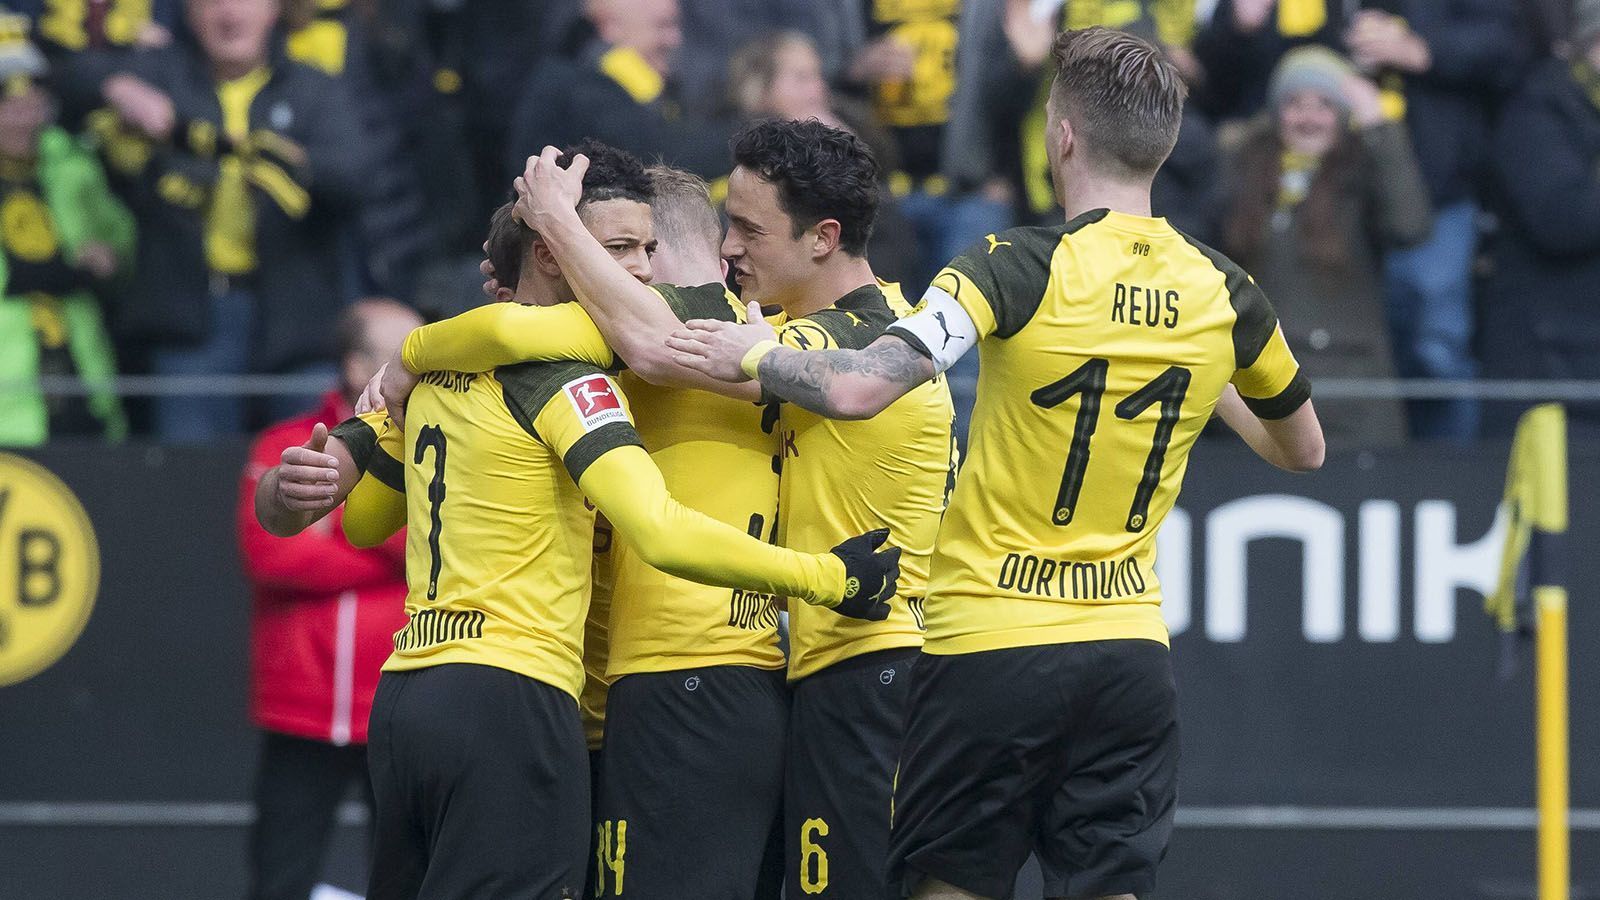 
                <strong>So schlugen sich die BVB-Stars gegen Mainz</strong><br>
                Borussia Dortmund zeigt gegen den FSV Mainz 05 nach starker Leistung in der ersten Halbzeit einen schwachen zweiten Durchgang. ran.de präsentiert die Einzelkritik zum Auftritt des BVB.
              